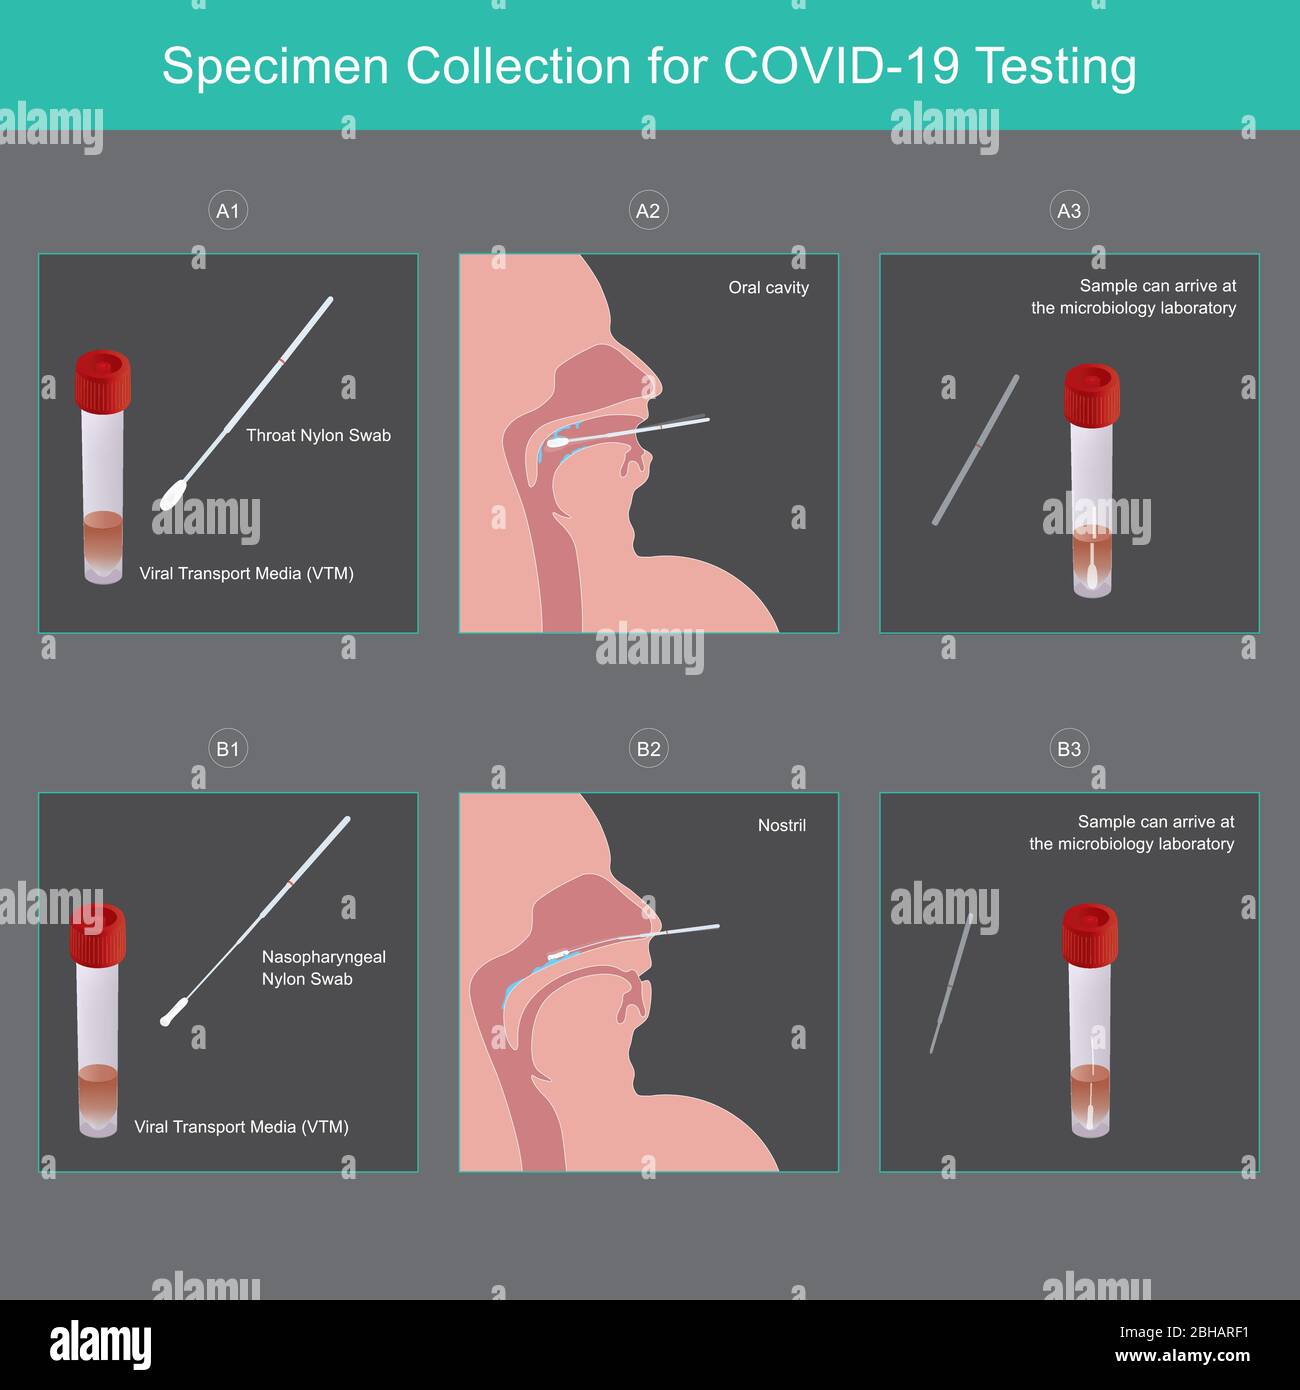 Prelievo dei campioni per il test COVID-19. Metodo utilizzato mezzi di trasporto virale (VTM) per la raccolta di secrezioni di campioni per virus COVID-19 a rischio di persone. Illustrazione Vettoriale